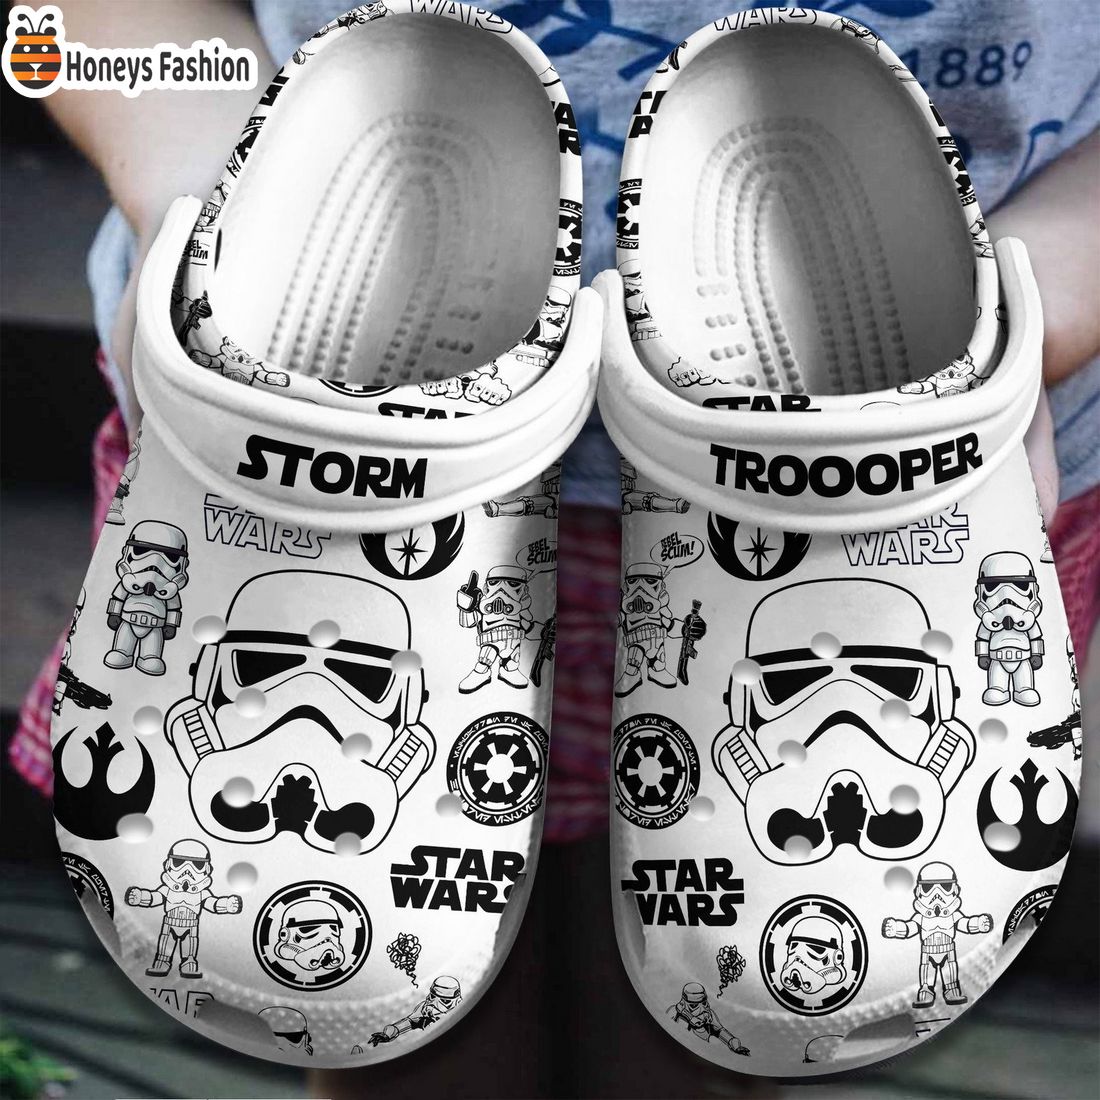 Stormtrooper Star Wars Crocs Clogs Shoes